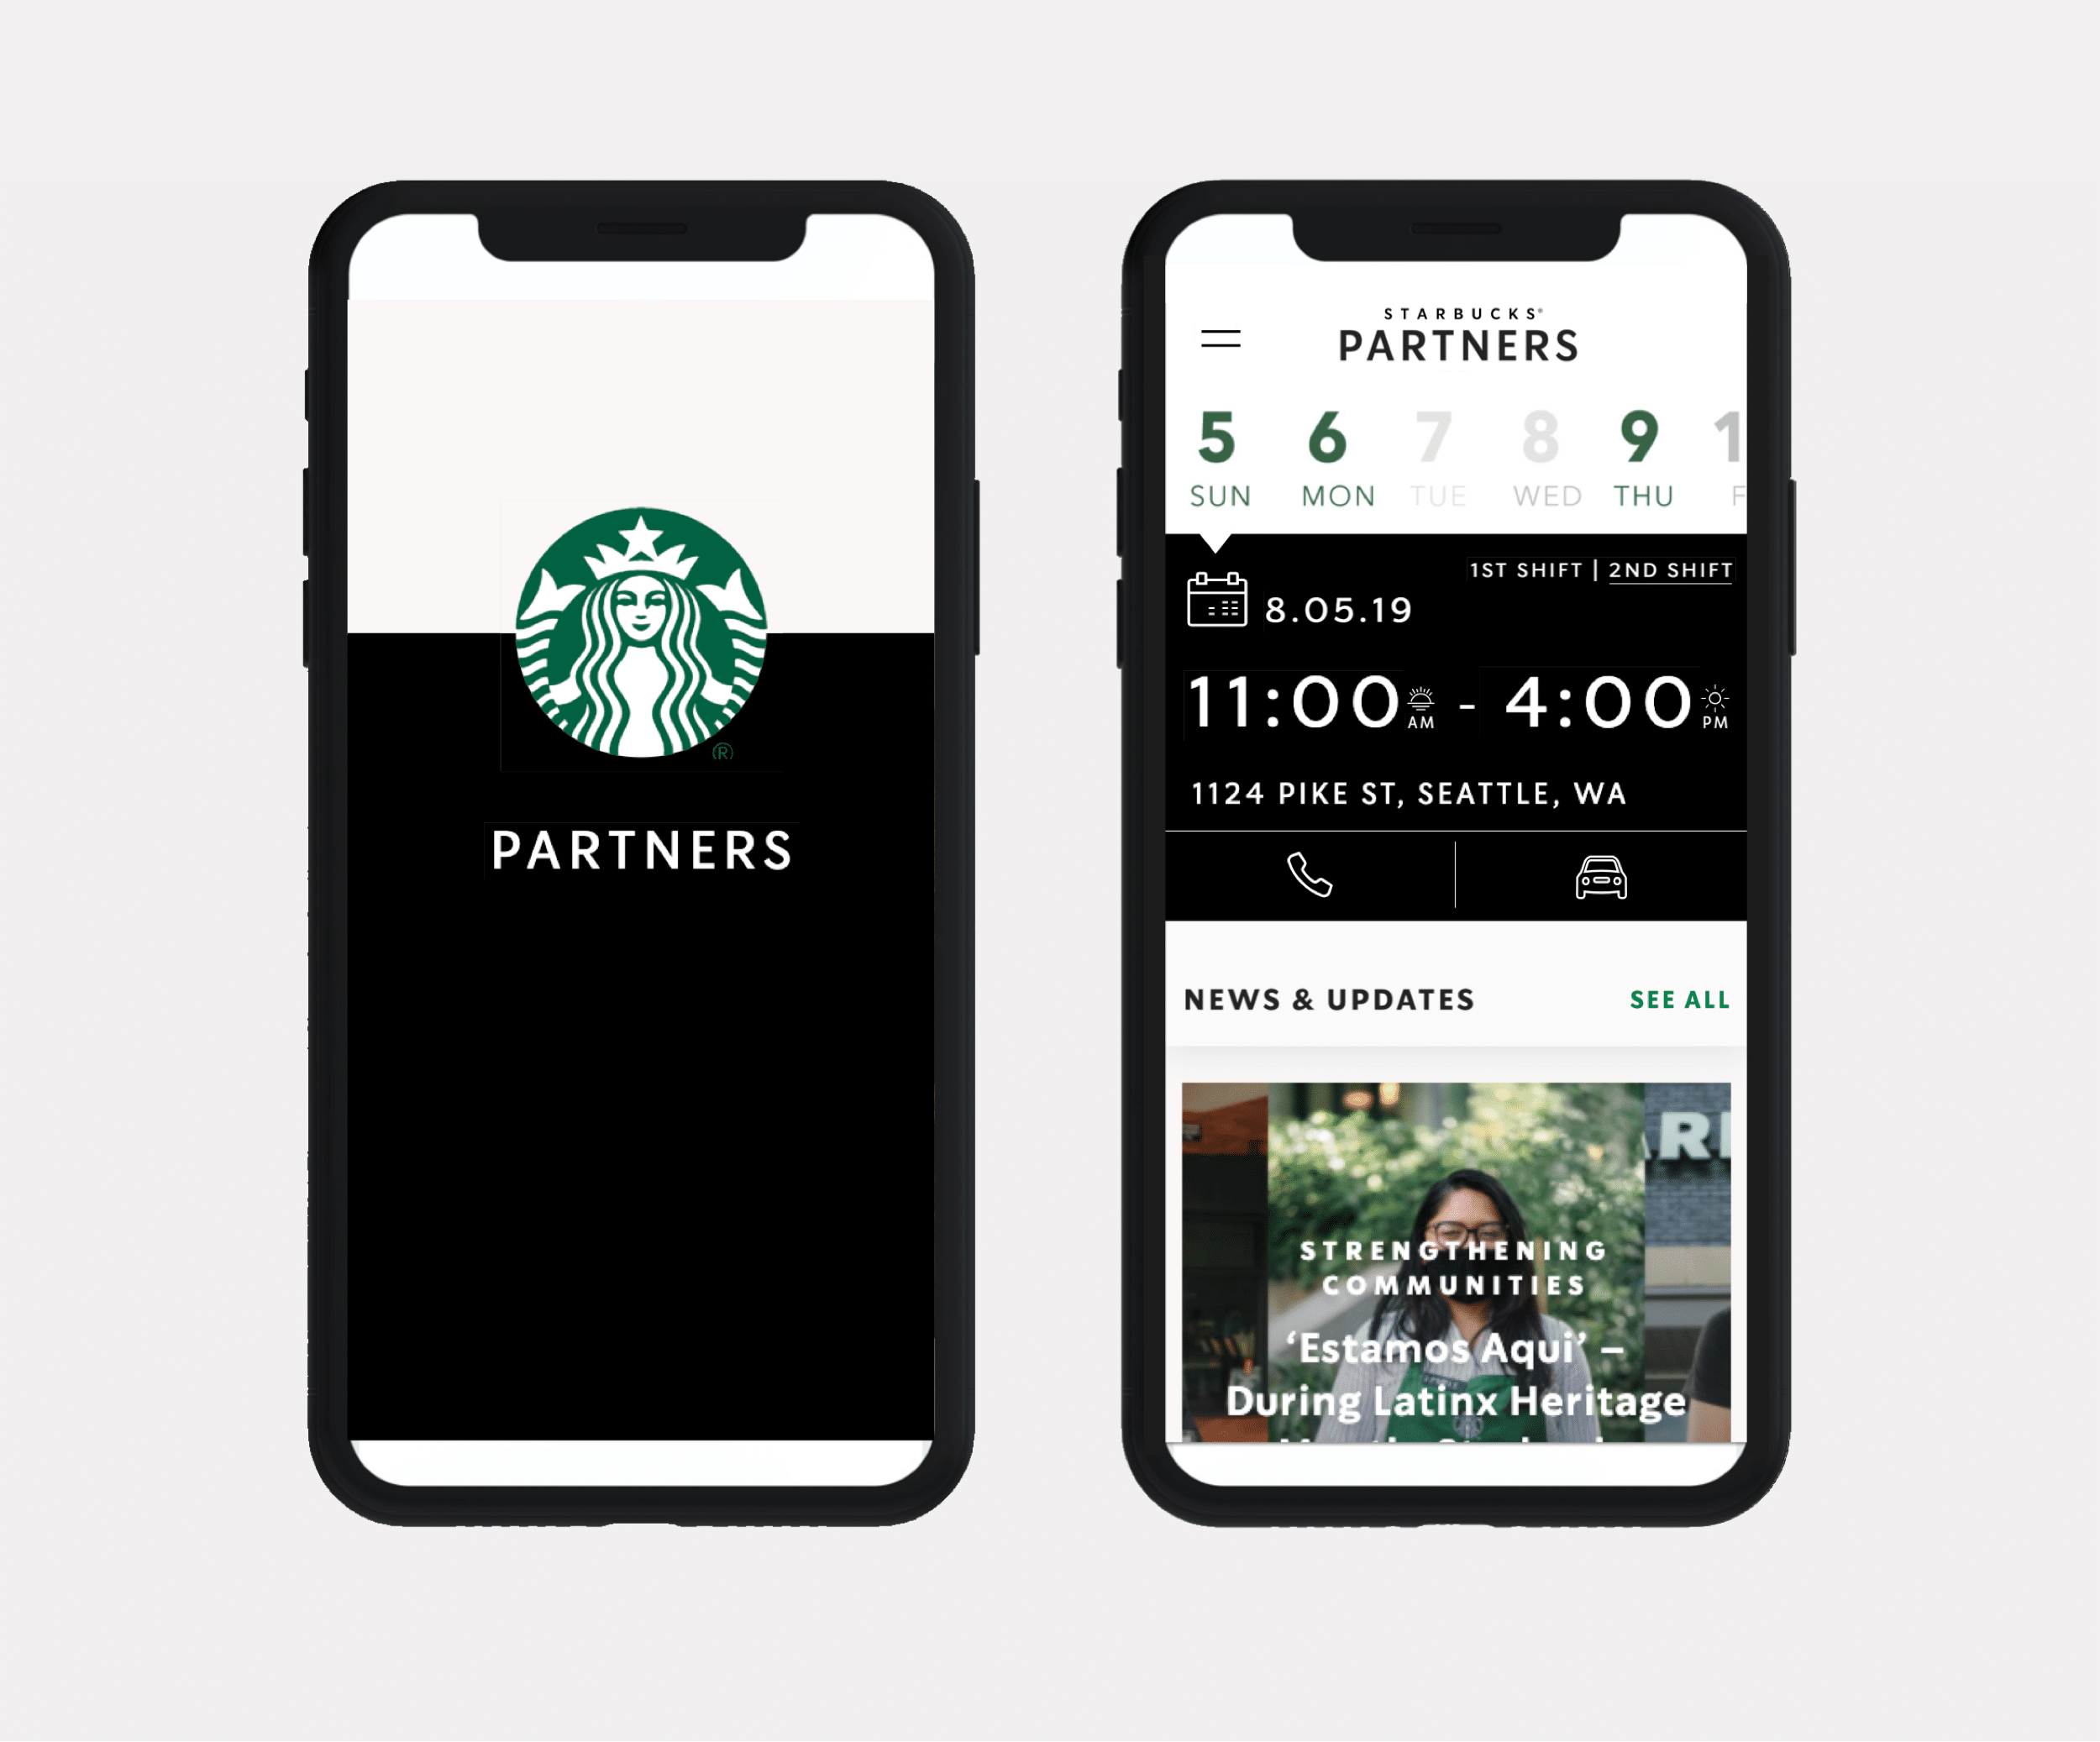 Starbucks Partner App Teague Nelson